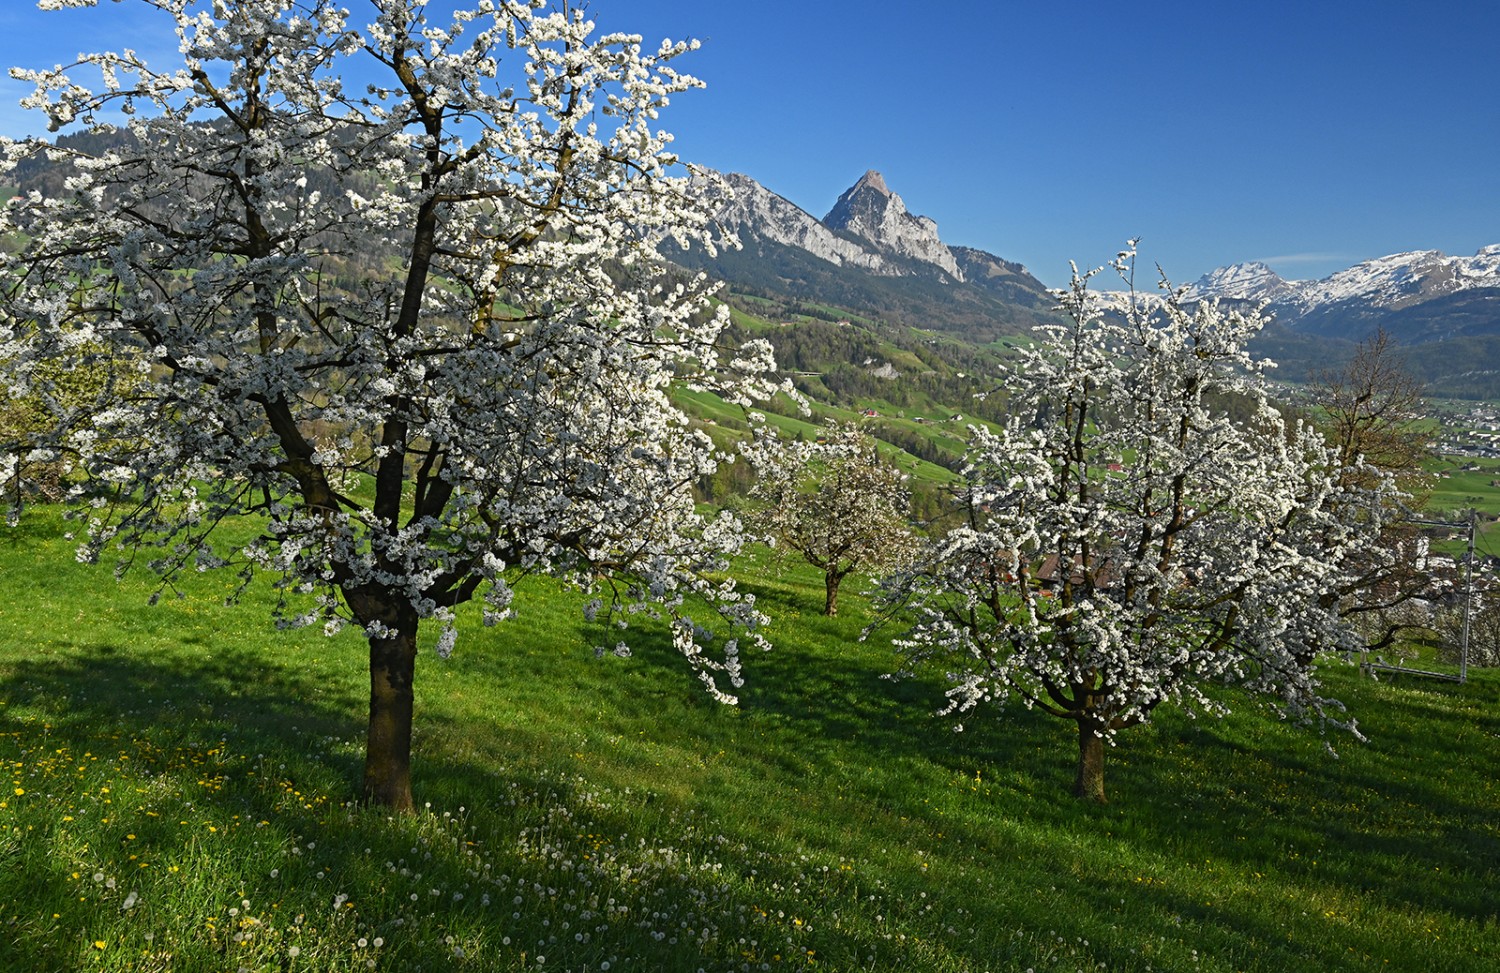 Lorsque les cerisiers se couvrent de fleurs blanches, les montagnes sont généralement sous la neige. Le Mythen, au-dessus de Schwyz, en est toutefois souvent dépourvu.